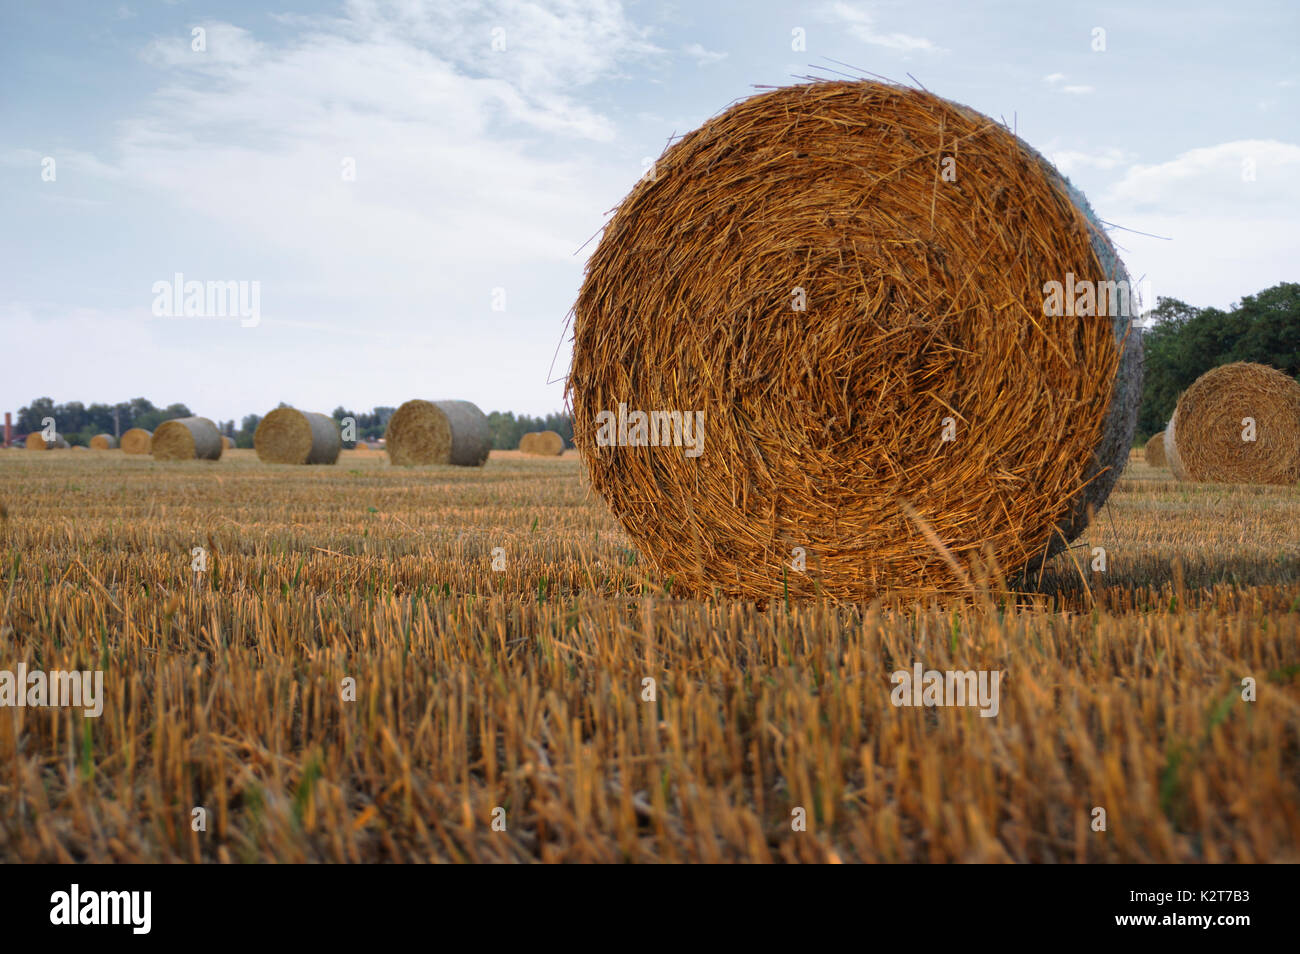 Asciugare le balle di fieno dopo la falciatura sul campo con il villaggio in background Foto Stock